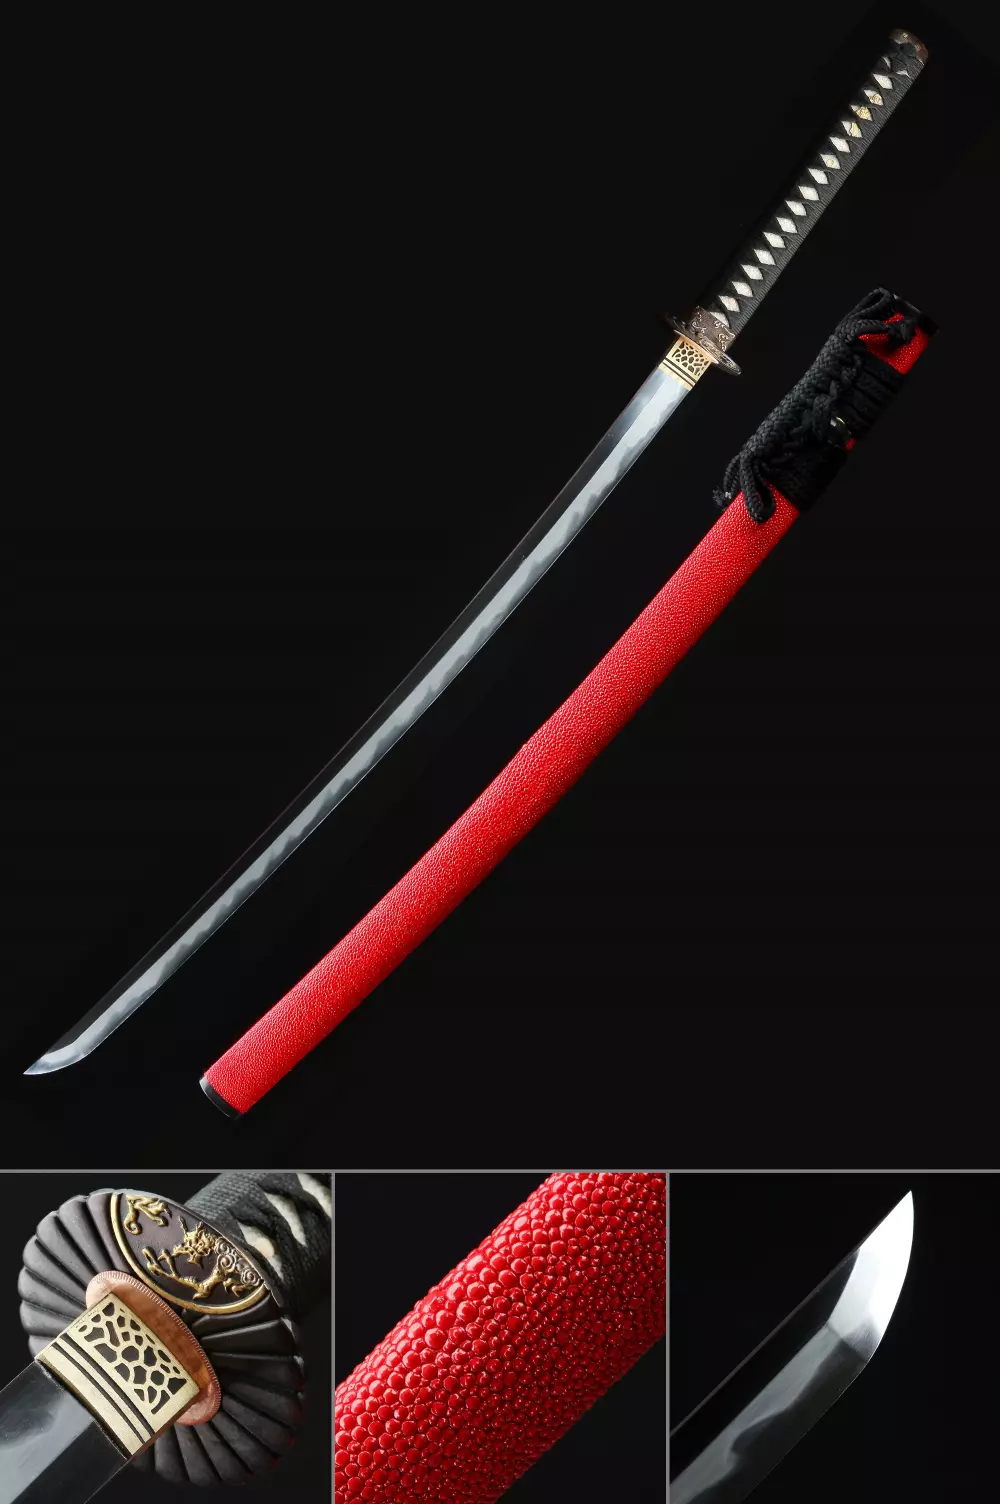 Katana Maru en Acier T10. Authentique sabre japonais.